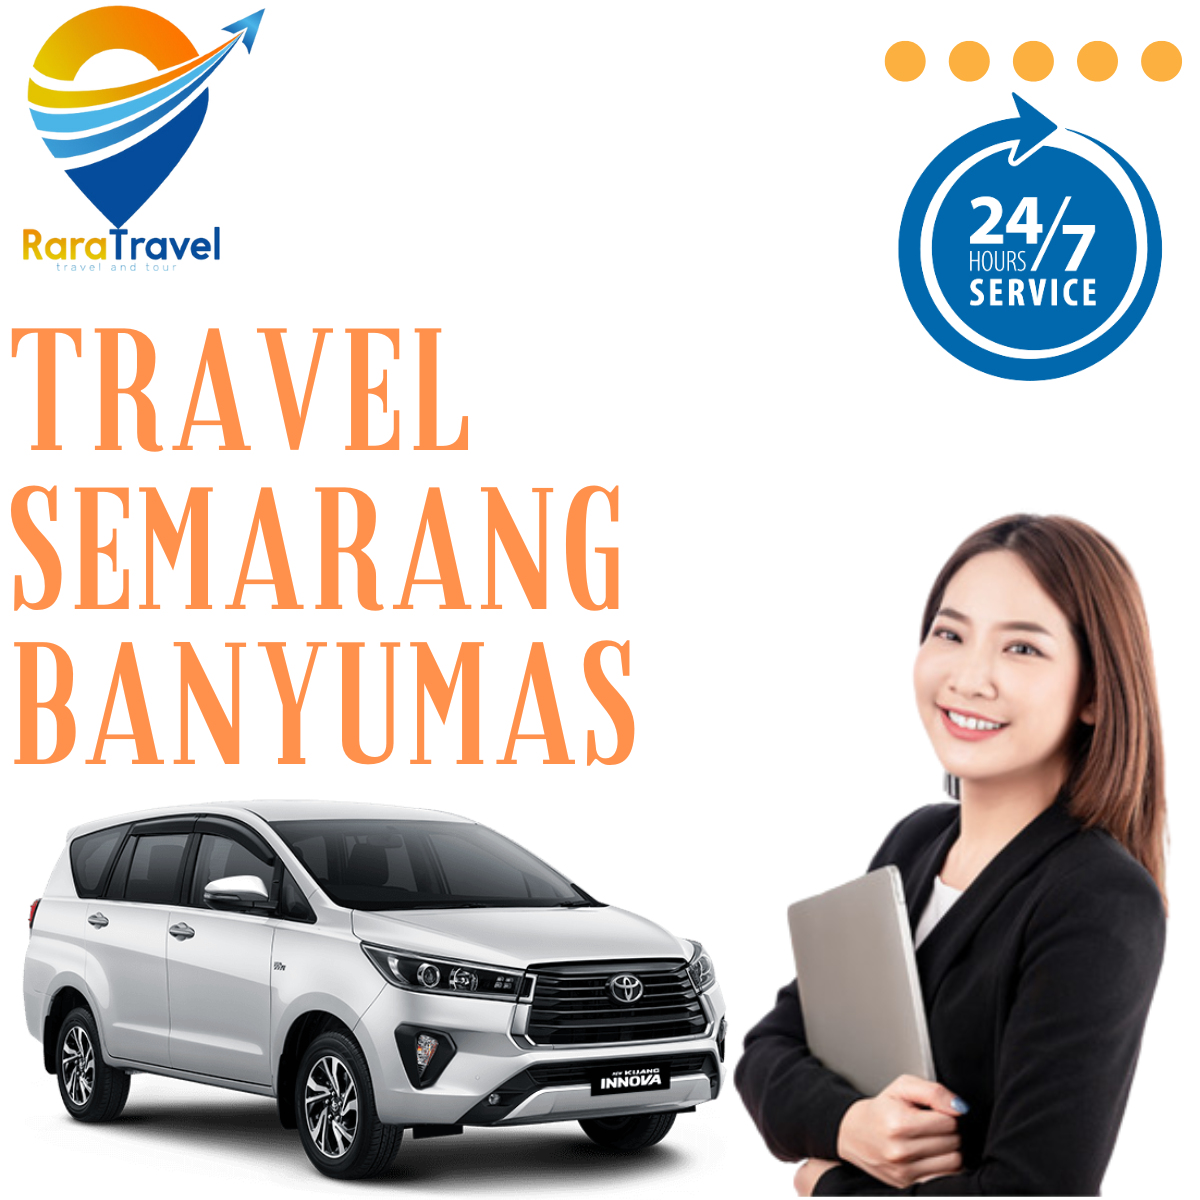 Travel Semarang ke Banyumas Harga Tiket Murah - RARATRAVEL.ID